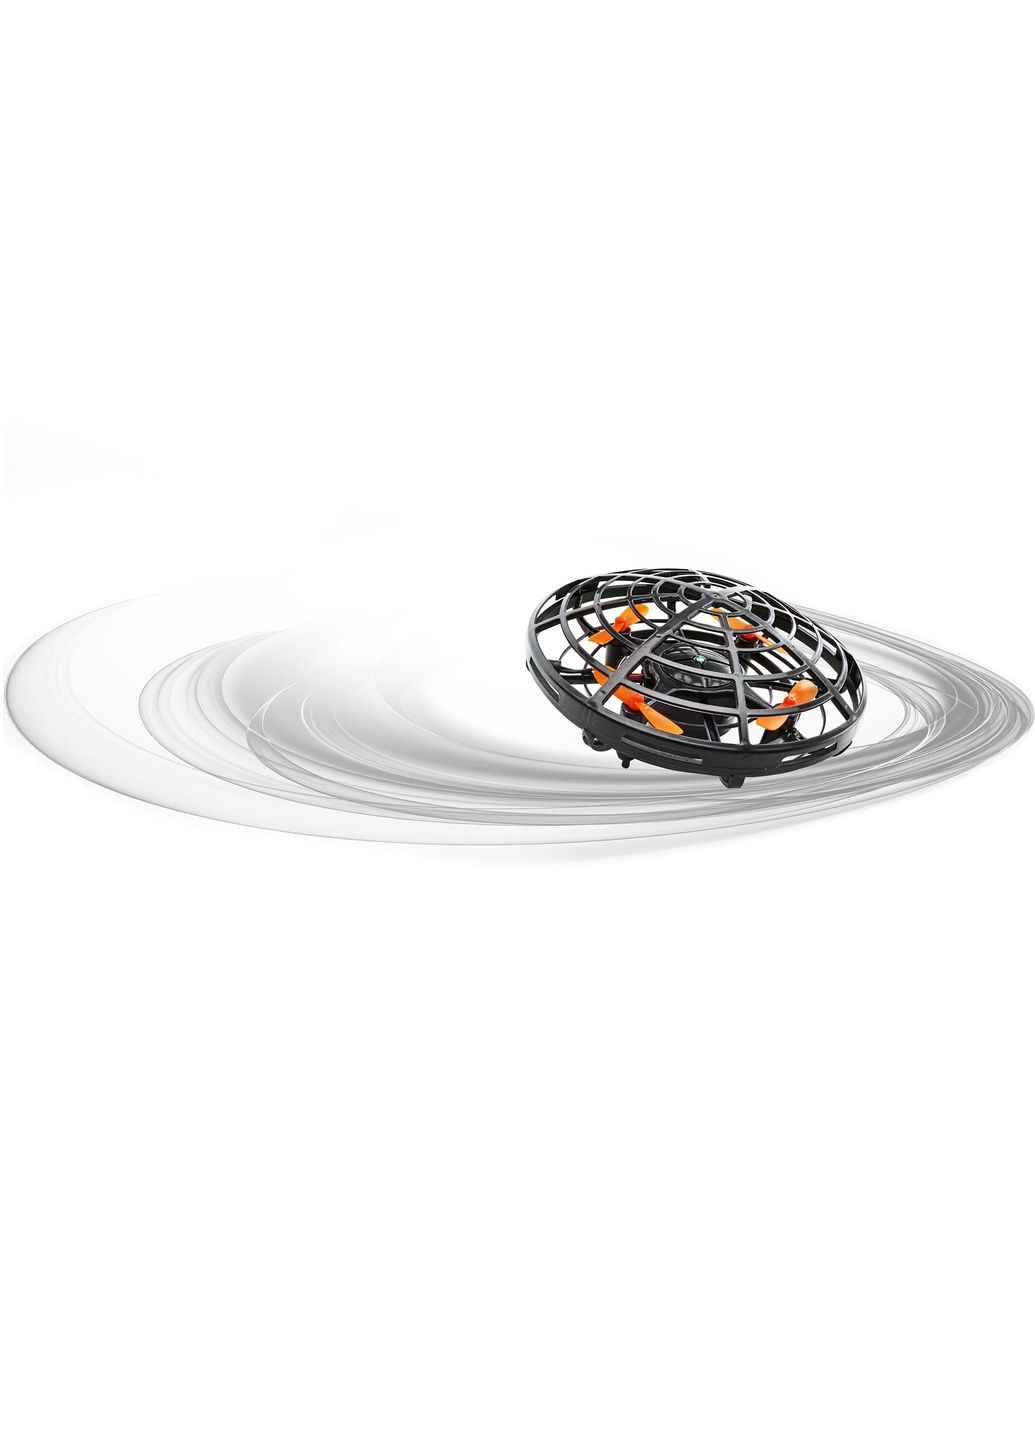 Летающий дрон с ручным управлением MAGIC MOVER Lidl (275393019)